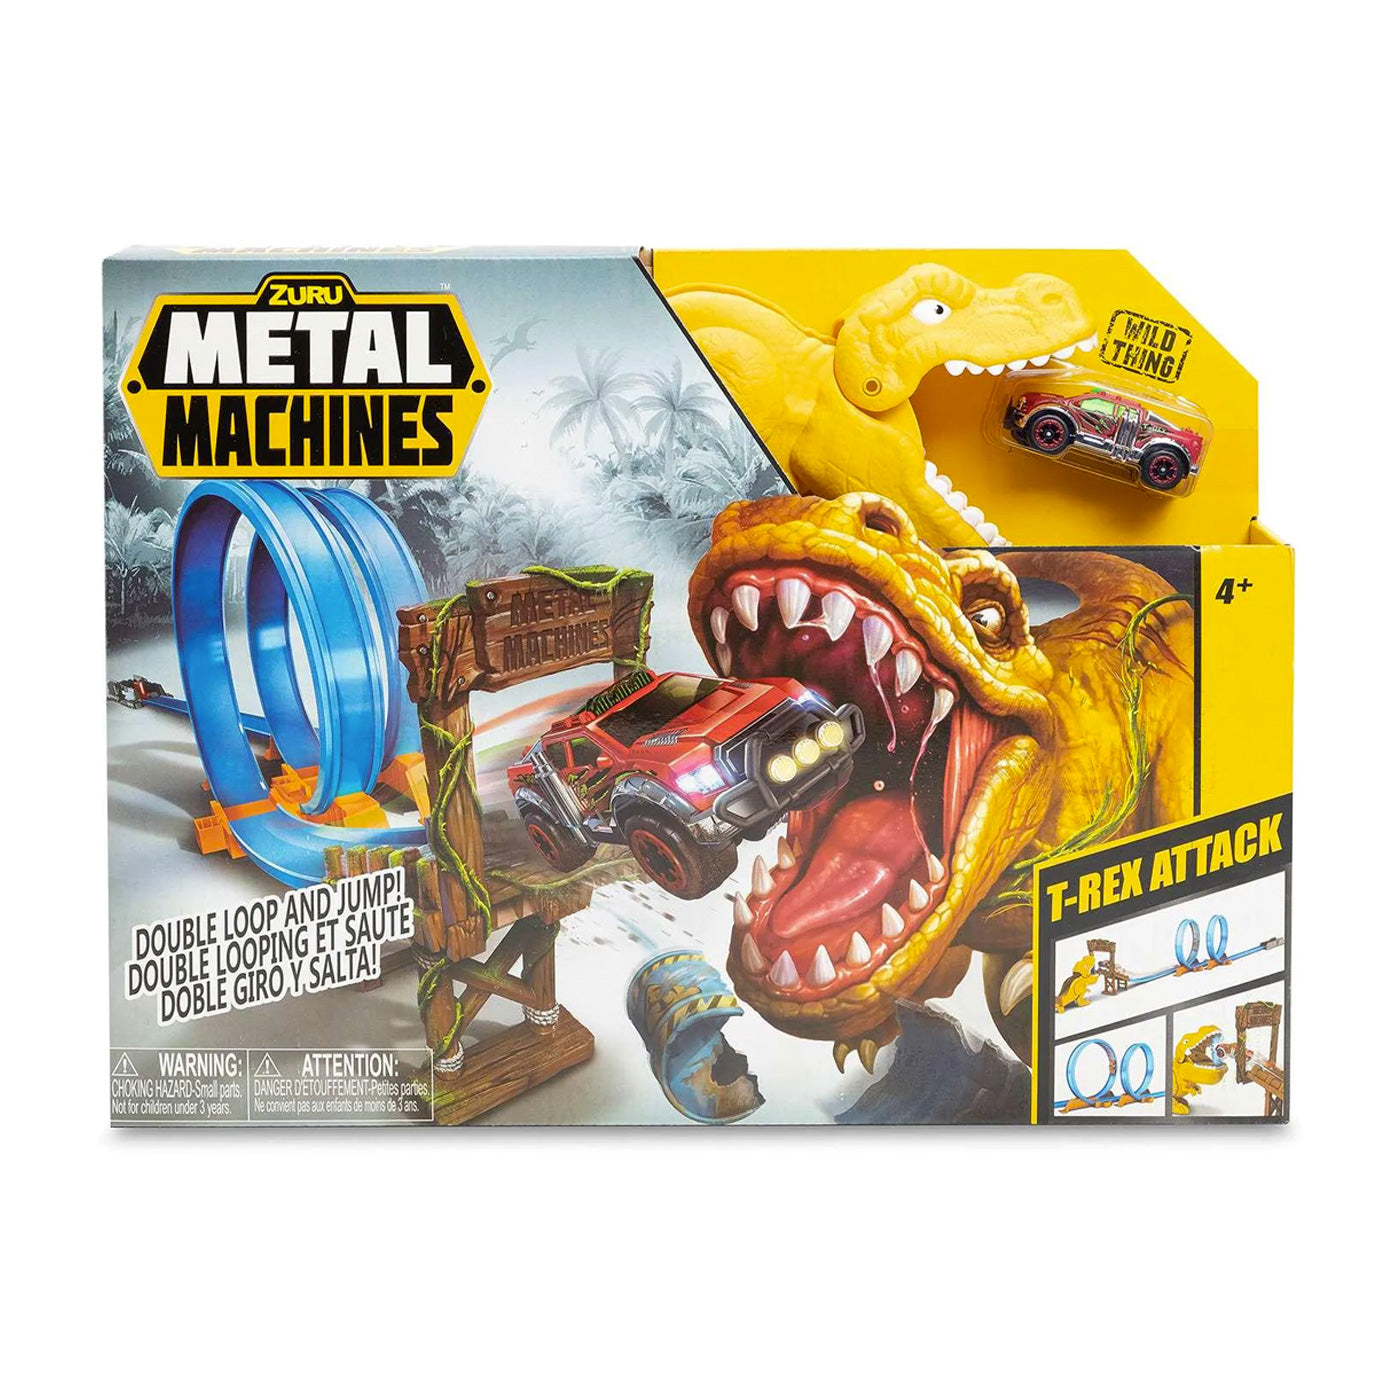 Zuru Metal Machines: T-Rex Attack